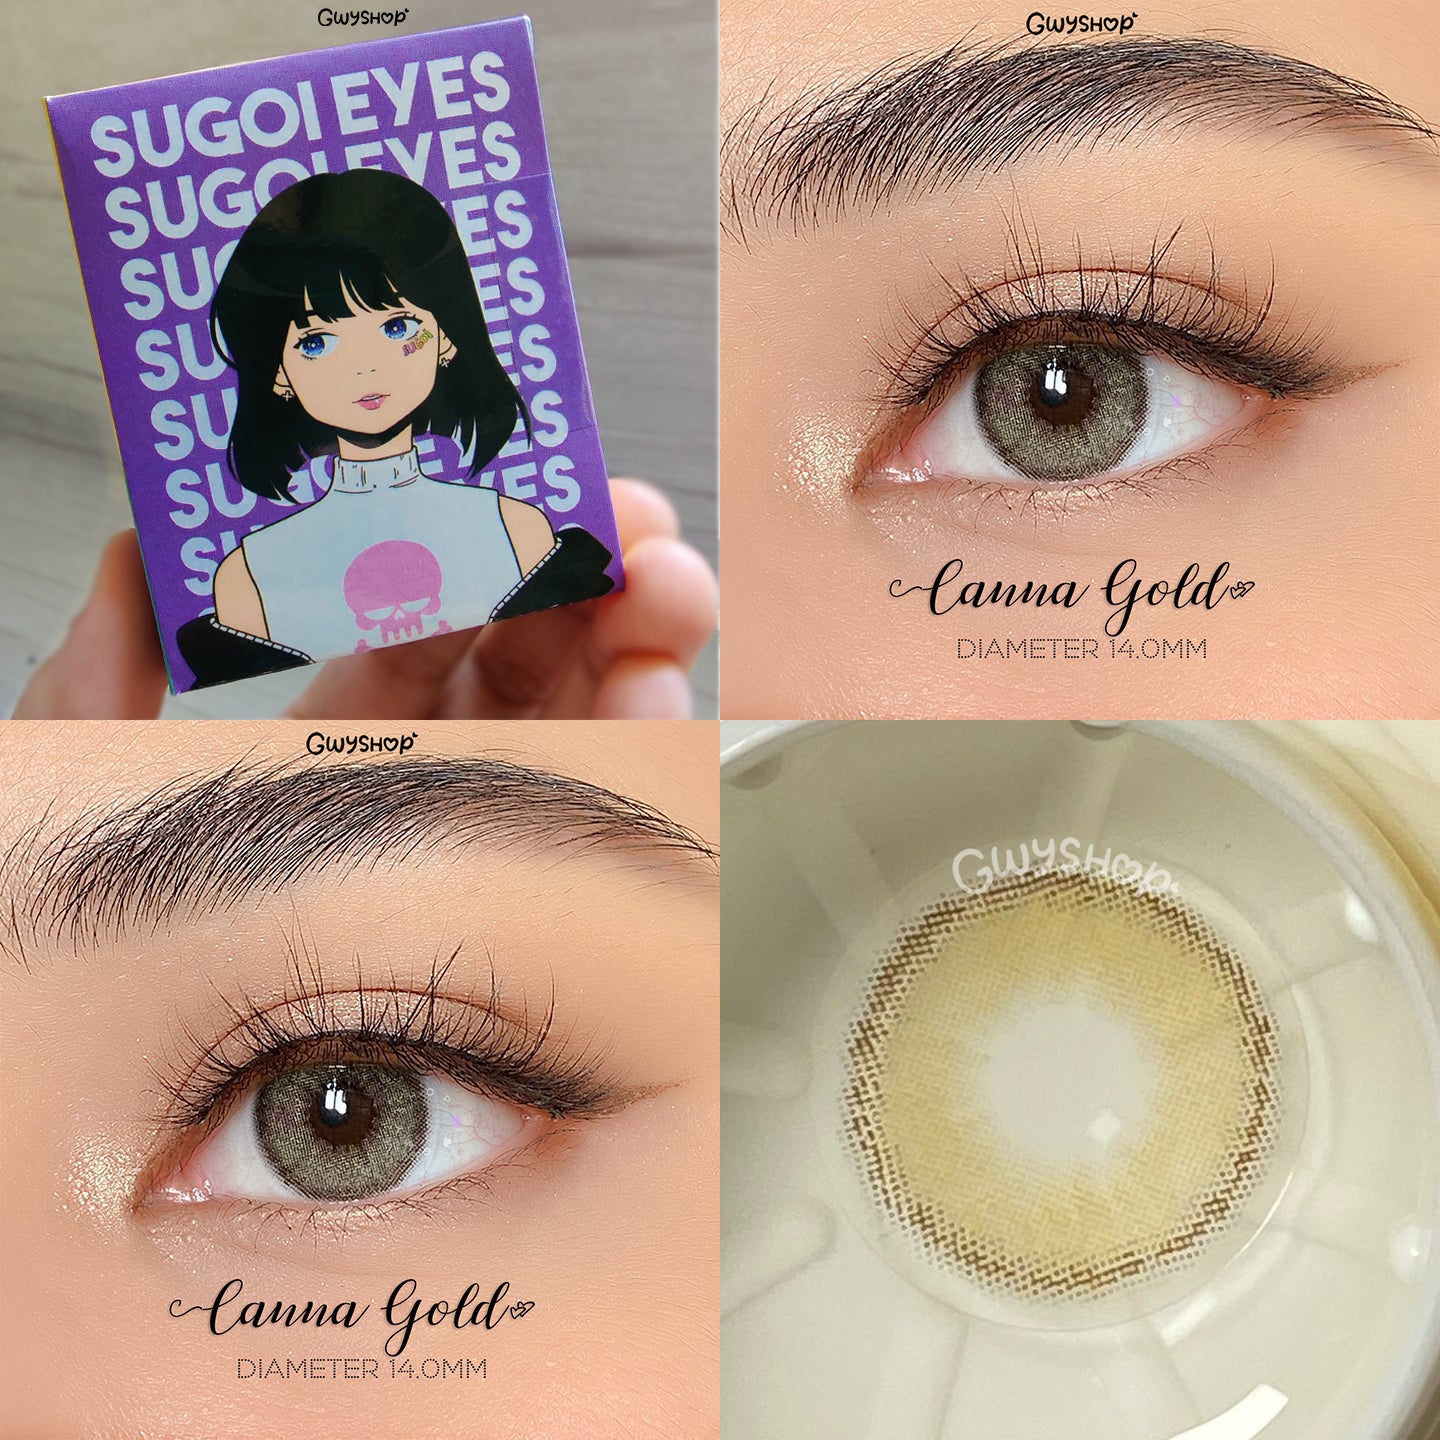 Canna Gold ☆ Sugoi Eyes